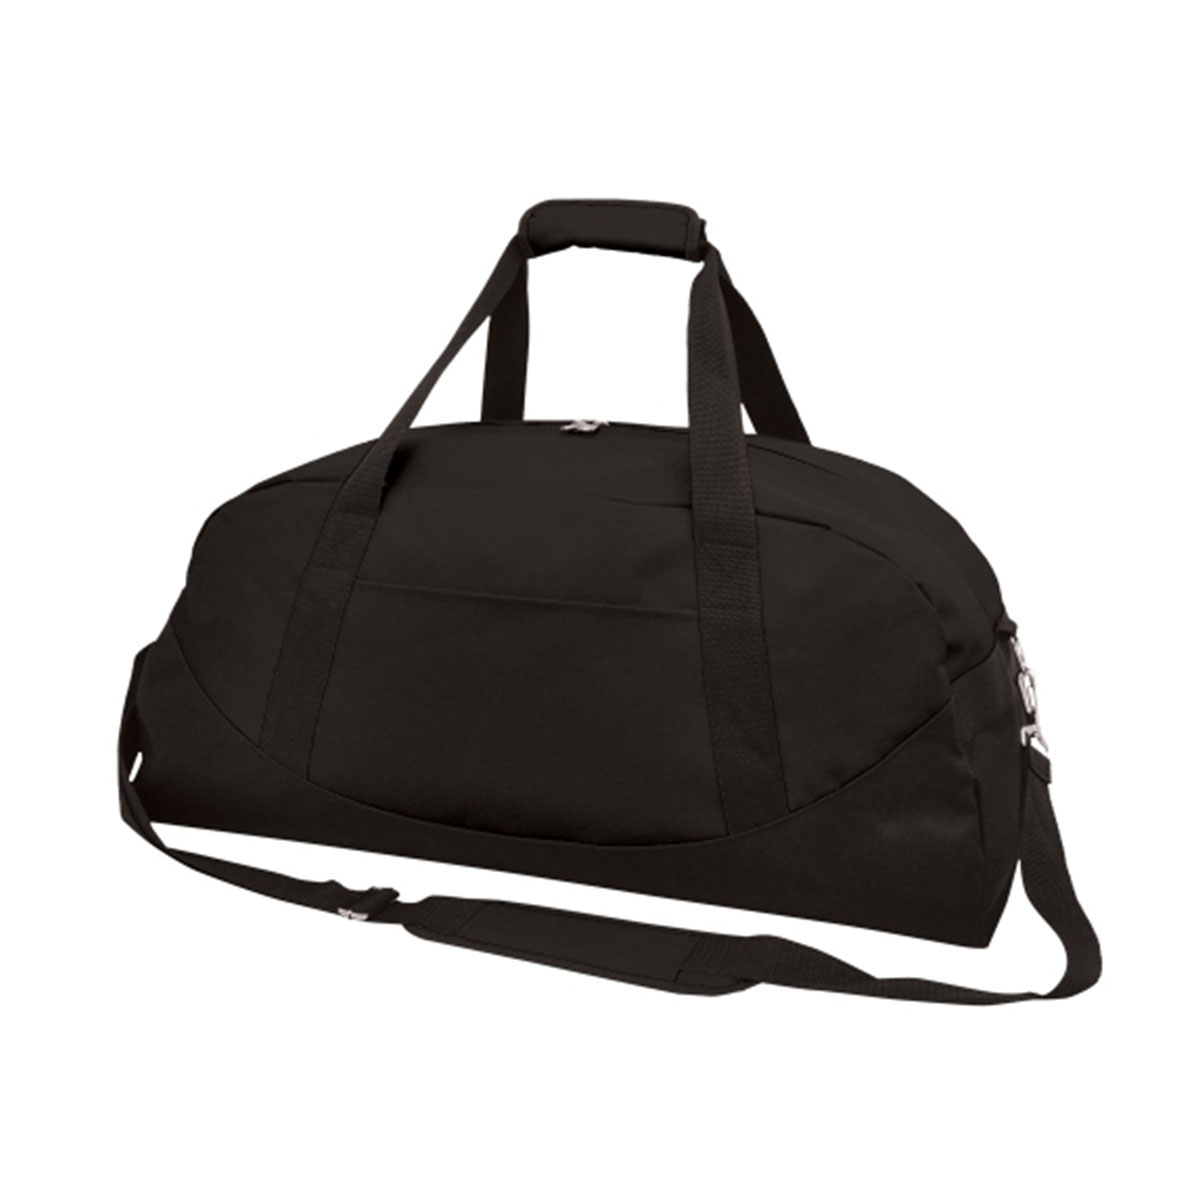 Lunar Sports Bag-Black / Black